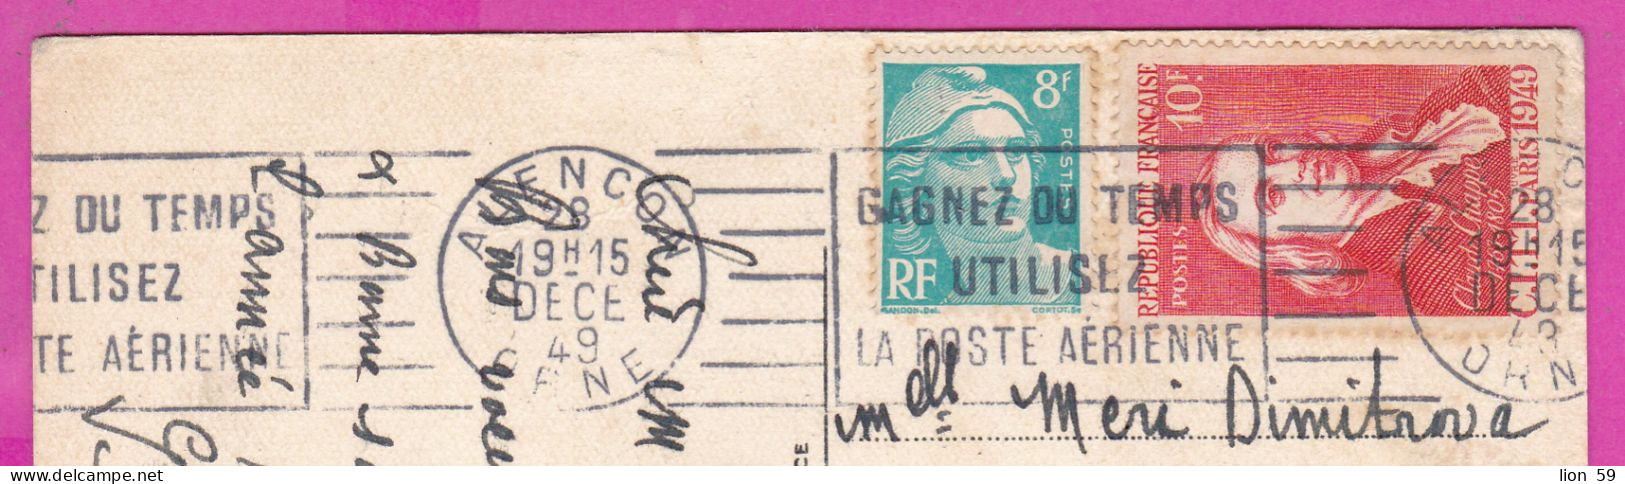 294250 / France Illust Bonne Annee  PC 1949 Alençon USED 9+10+2 Fr. Marianne De Gandon Blason D'Auvergne Claude Chappe - Covers & Documents